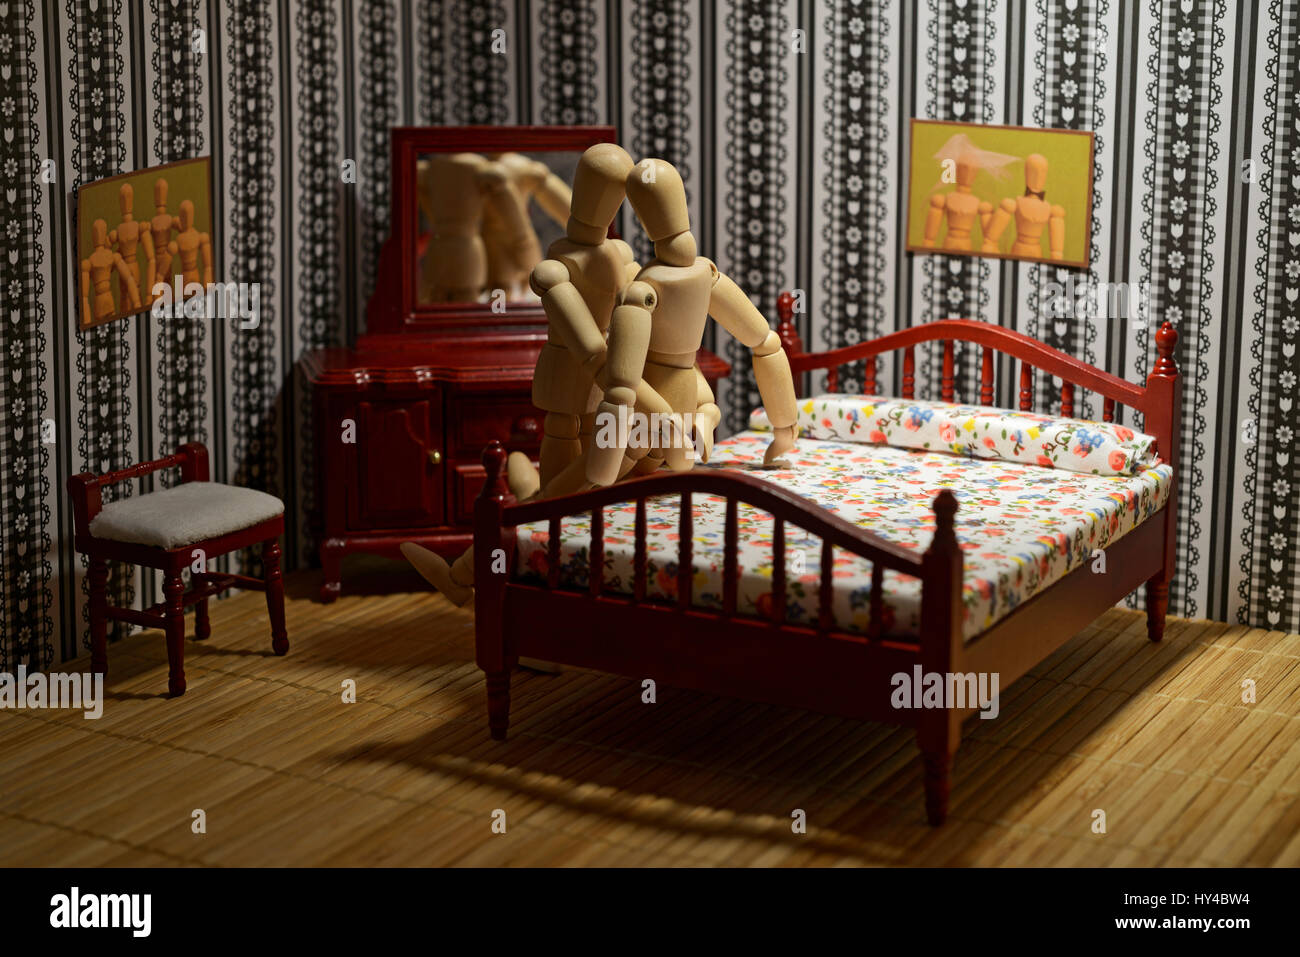 Das Leben von Holzfiguren - paar beim Sex im Bett vor dem Spiegel  Stockfotografie - Alamy